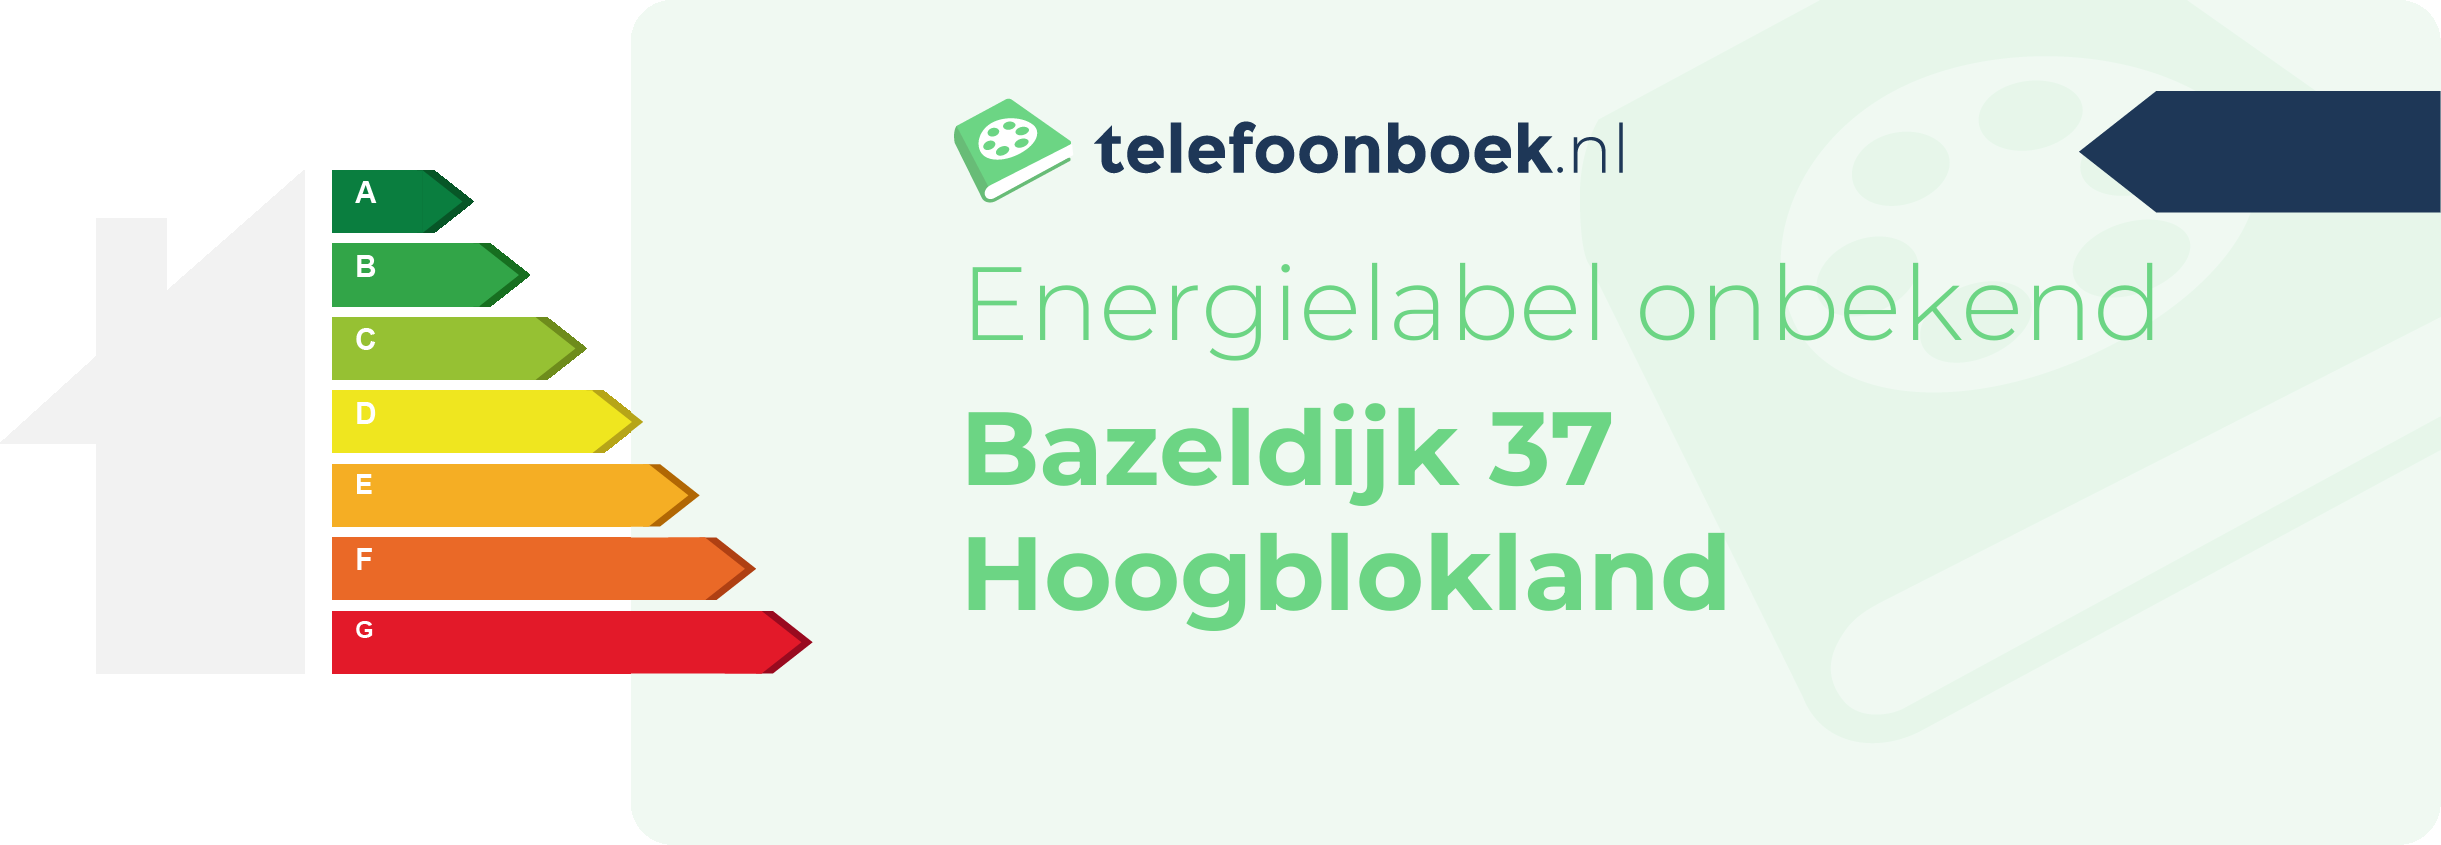 Energielabel Bazeldijk 37 Hoogblokland